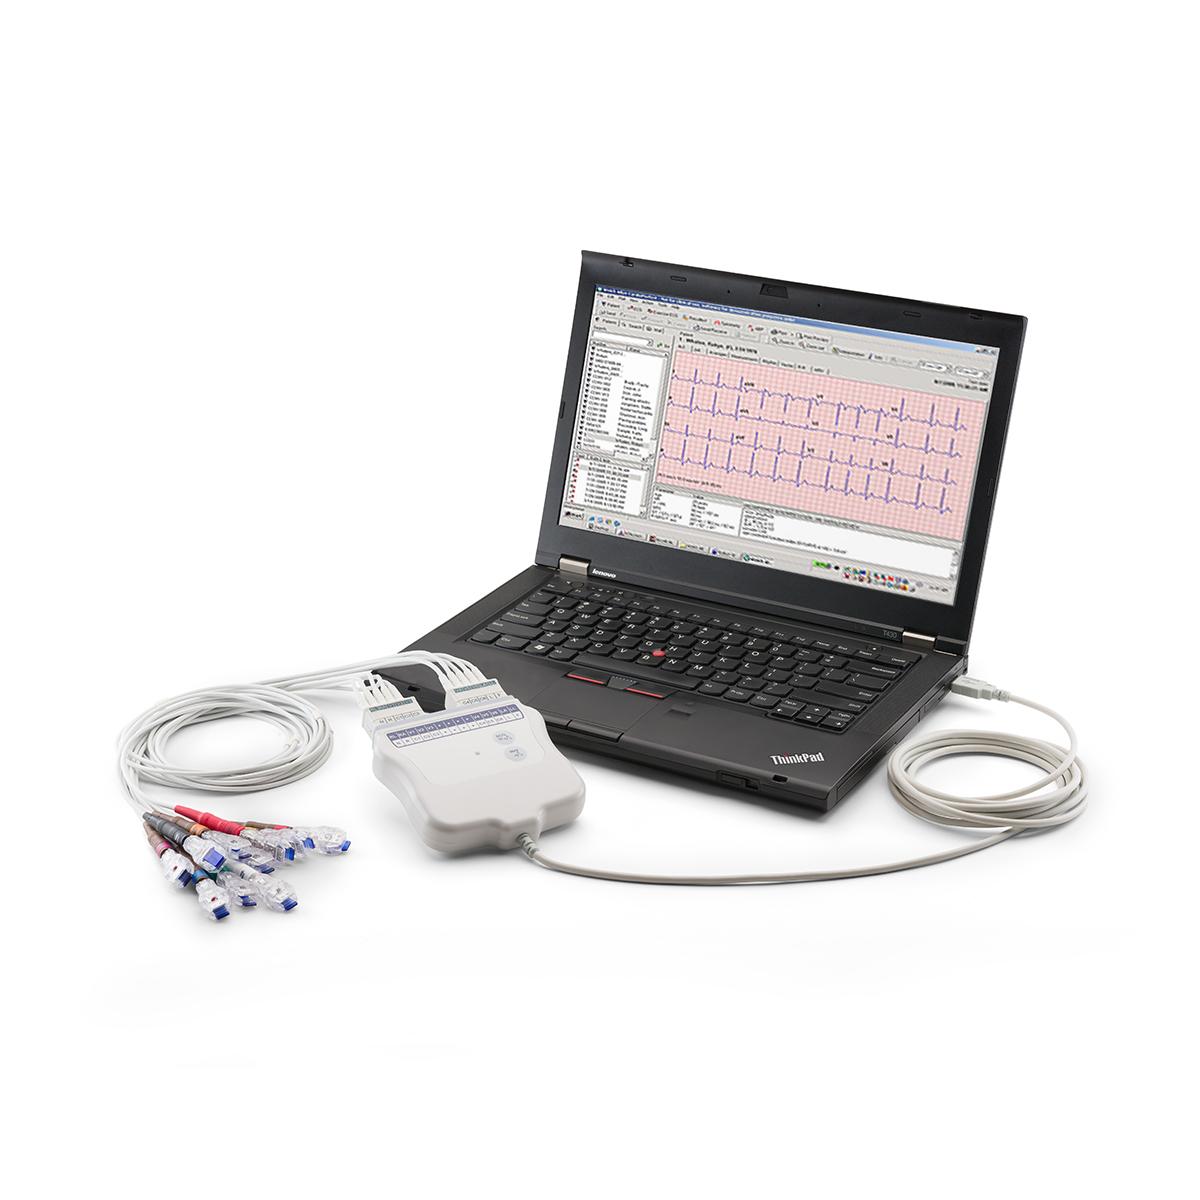 Elettrocardiografo a riposo CardioPerfect Workstation collegato tramite USB a un computer portatile, vista di 3/4